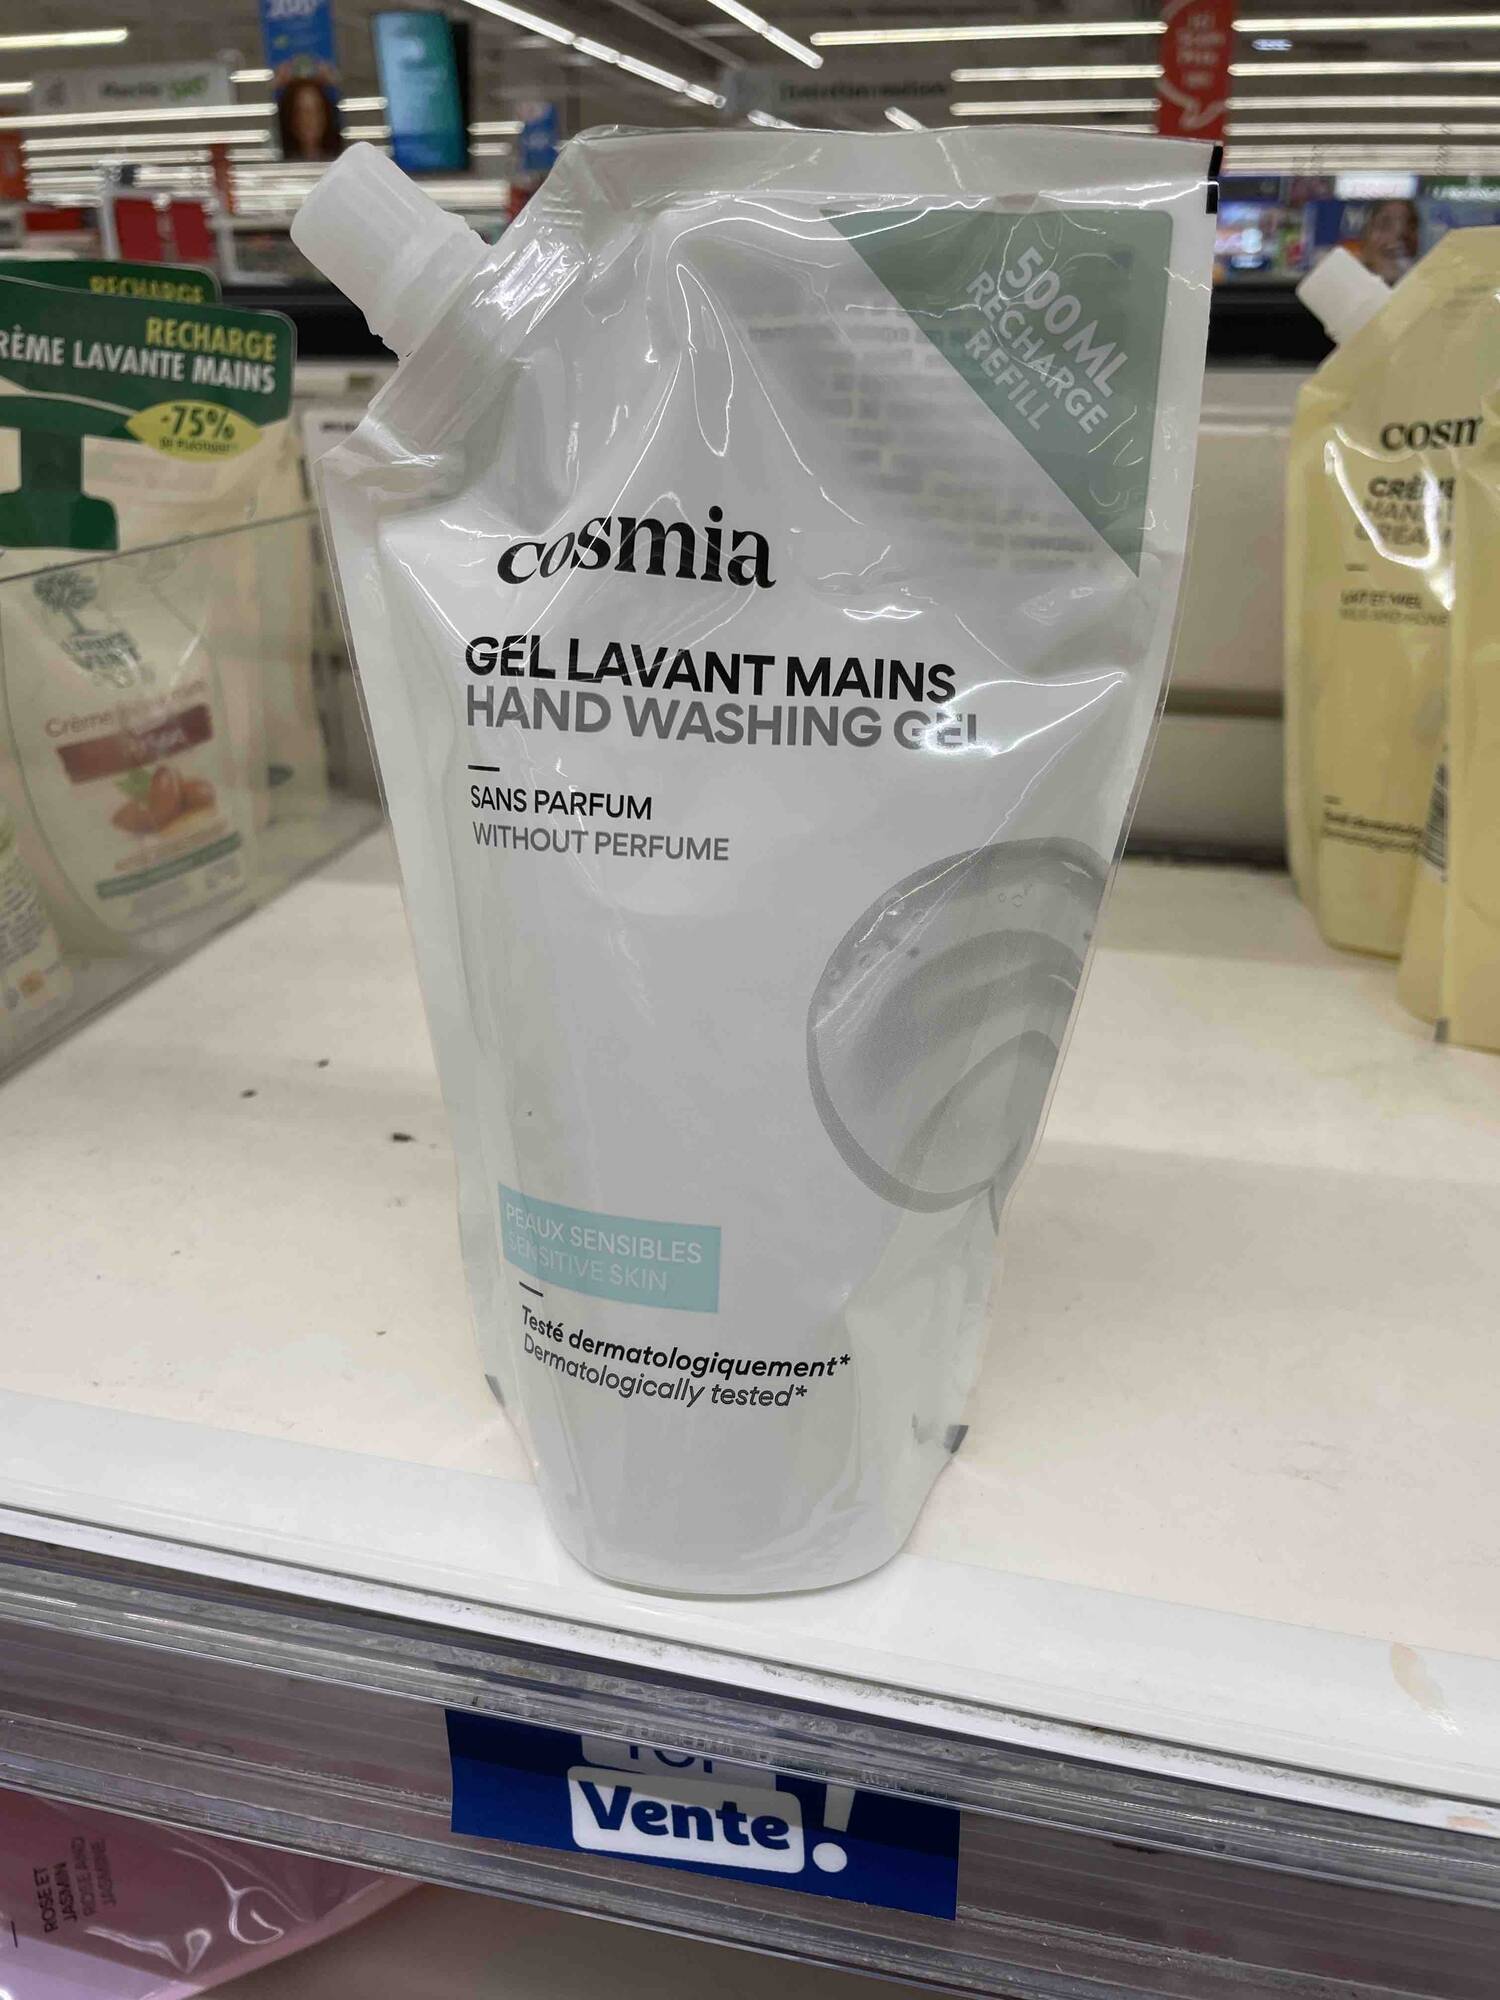 COSMIA - Gel lavant mains sans parfum